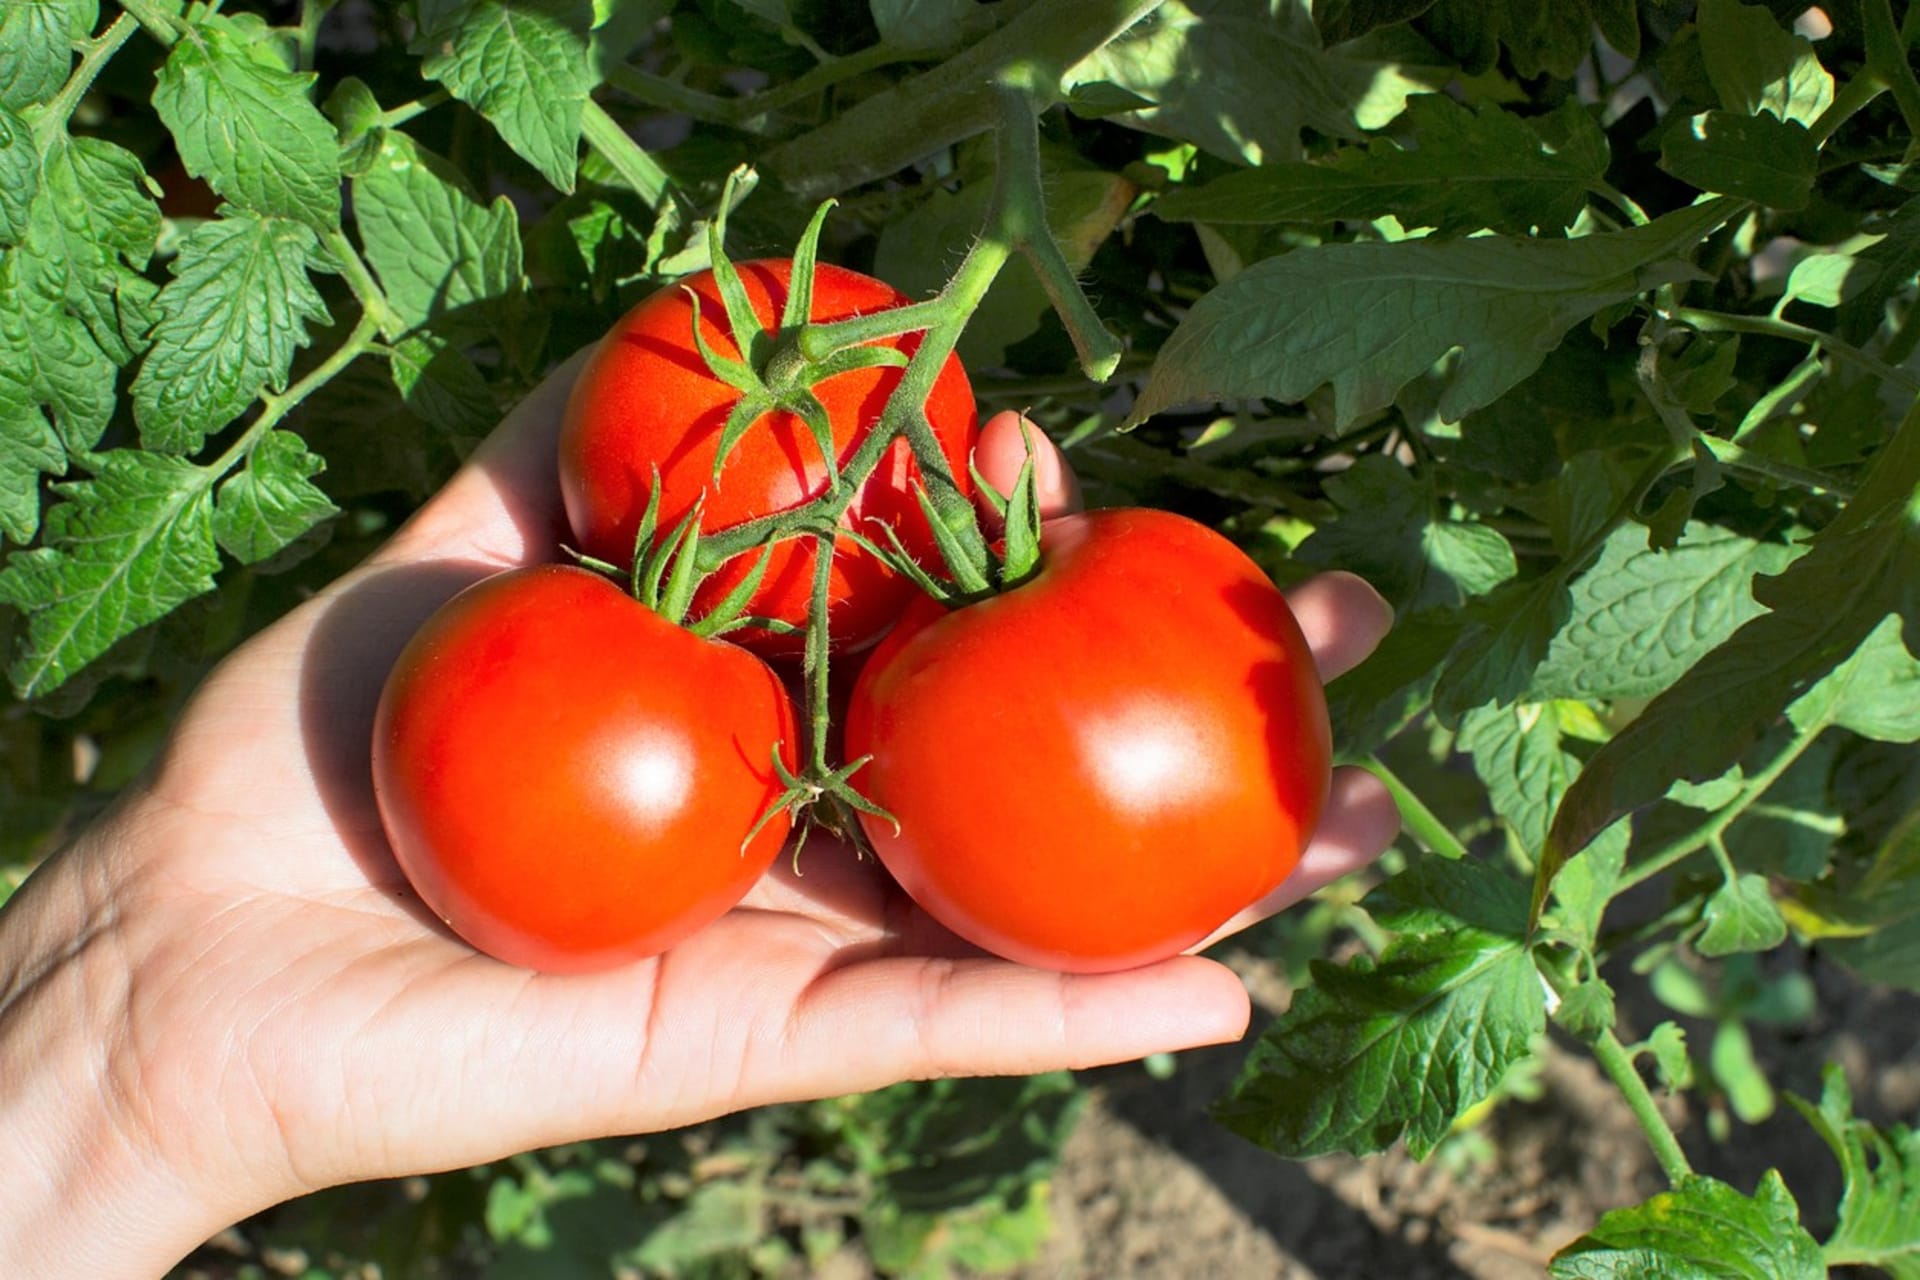 Přirozeně dozrálá rajčata mají naprosto jedinečnou vůni a chuť. Skvěle chutnají čerstvá, ideálně vlastní a čerstvě utržená, kdy také obsahují nejvíce účinných látek.